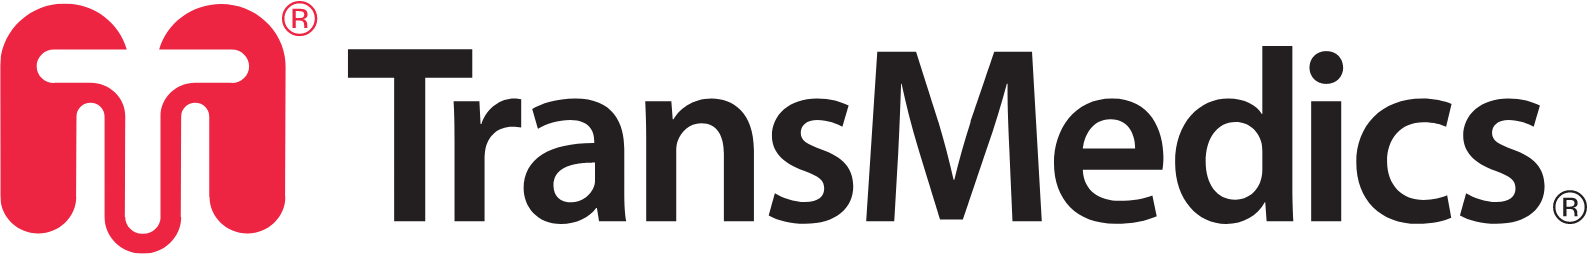 TransMedics Group logo large (transparent PNG)